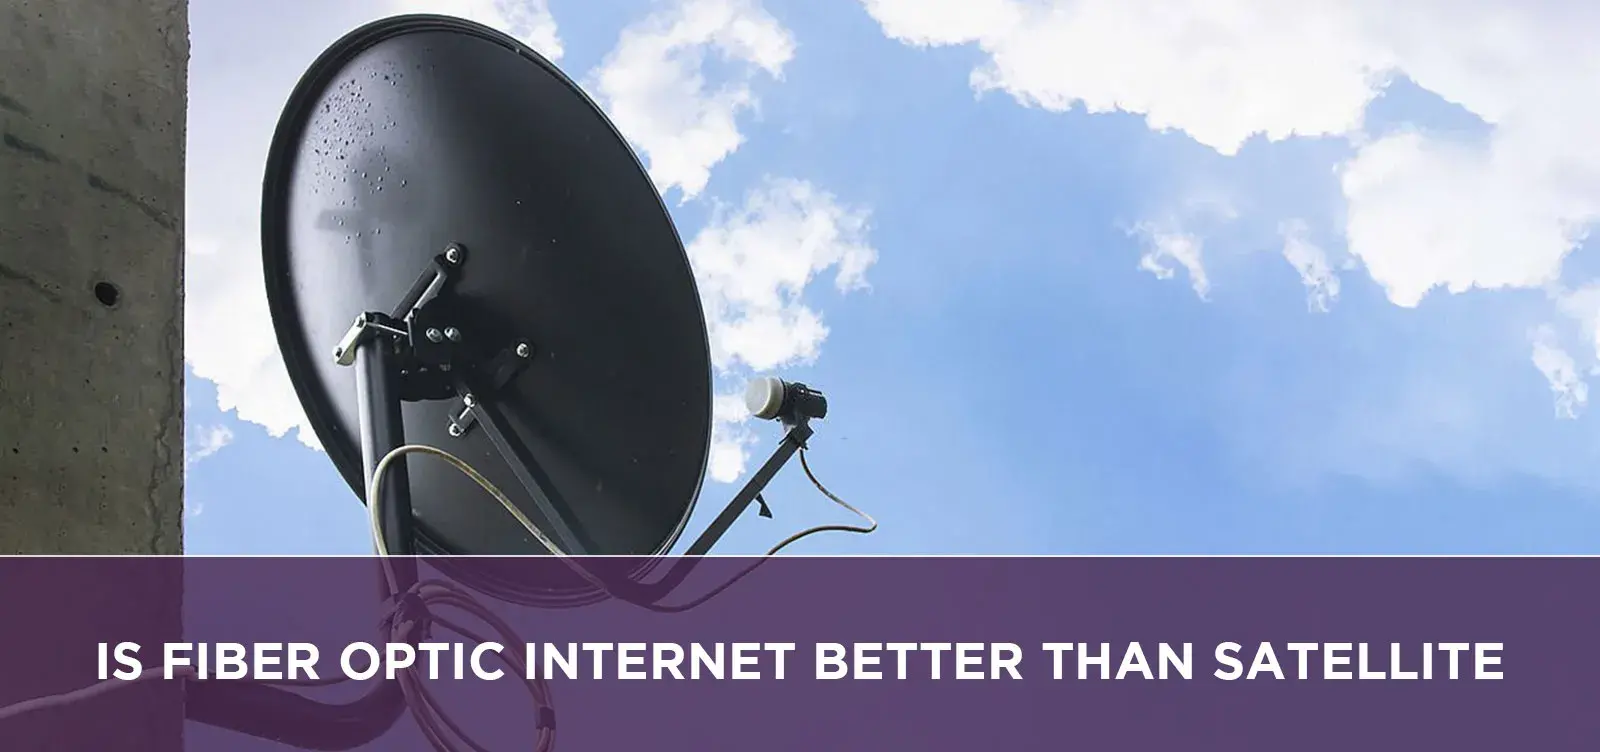 Is Fiber Optic Internet Better Than Satellite?